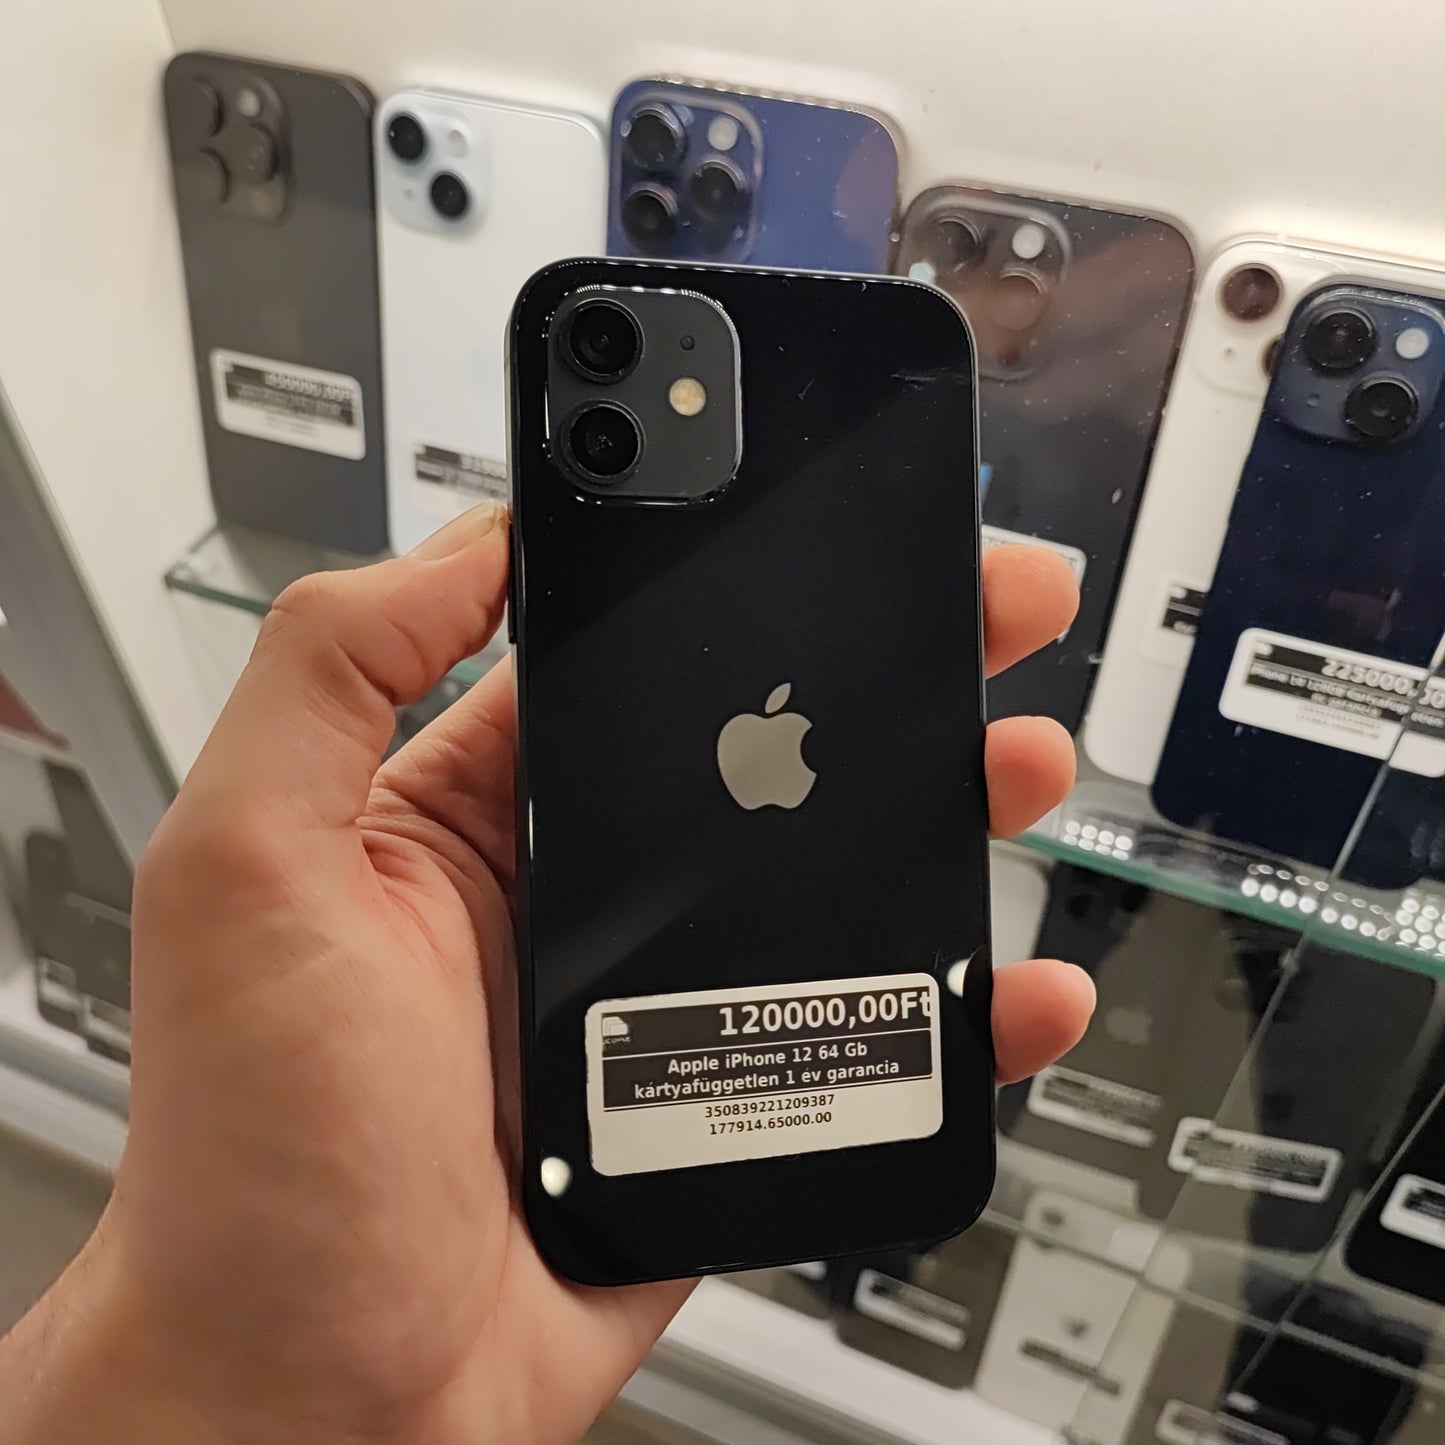 Apple iPhone 12 64 Gb kártyafüggetlen 1 év garancia